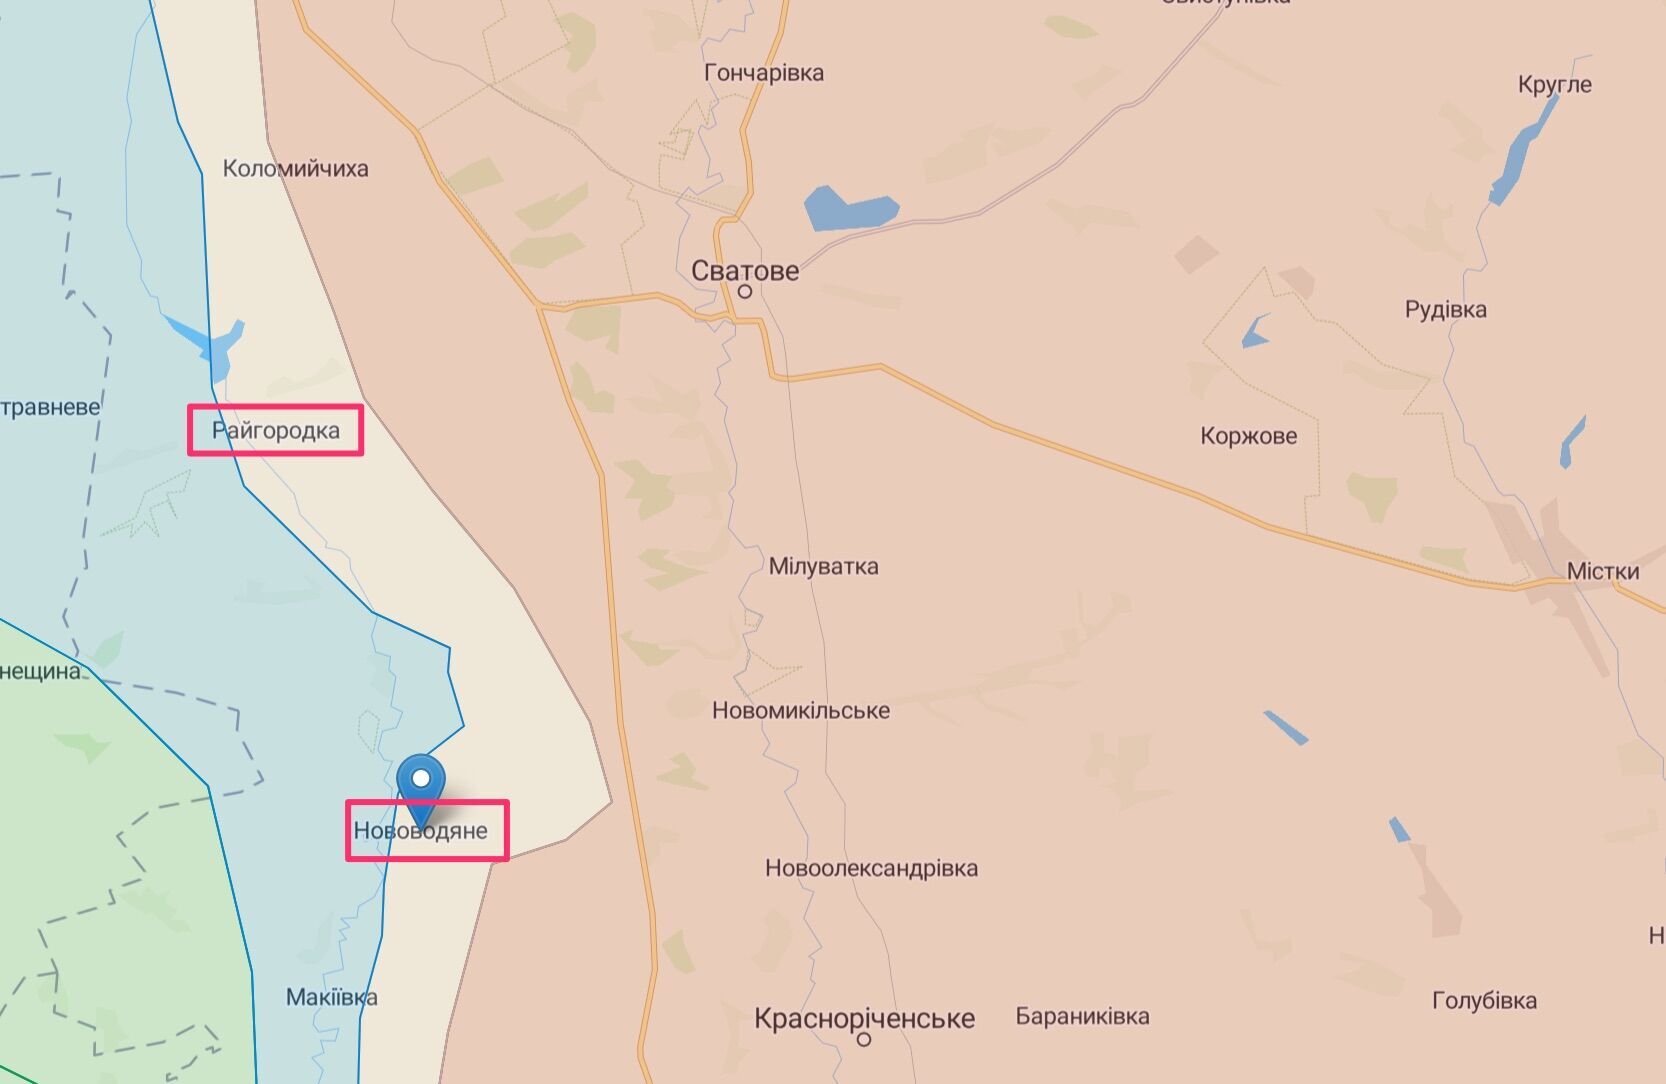 Подразделения врага по линии Райгородка – Нововодяное потерпели поражение и отошли